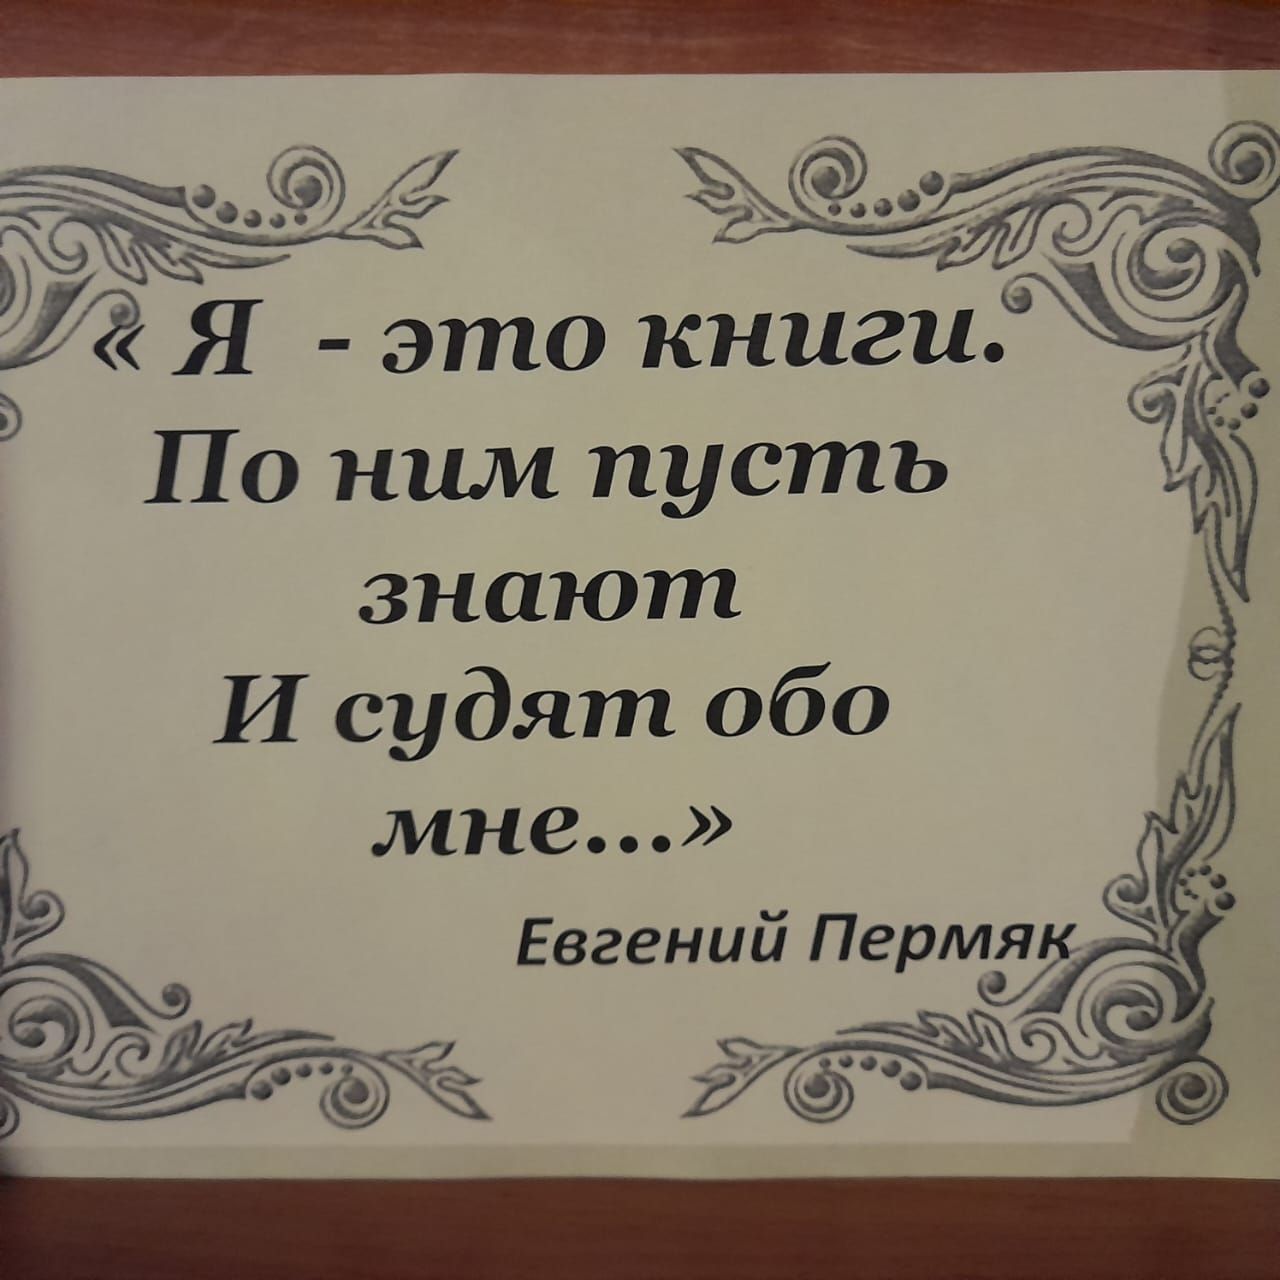 В центральной библиотеке г.Лаишево отметили 120-летие Евгения Пермяка